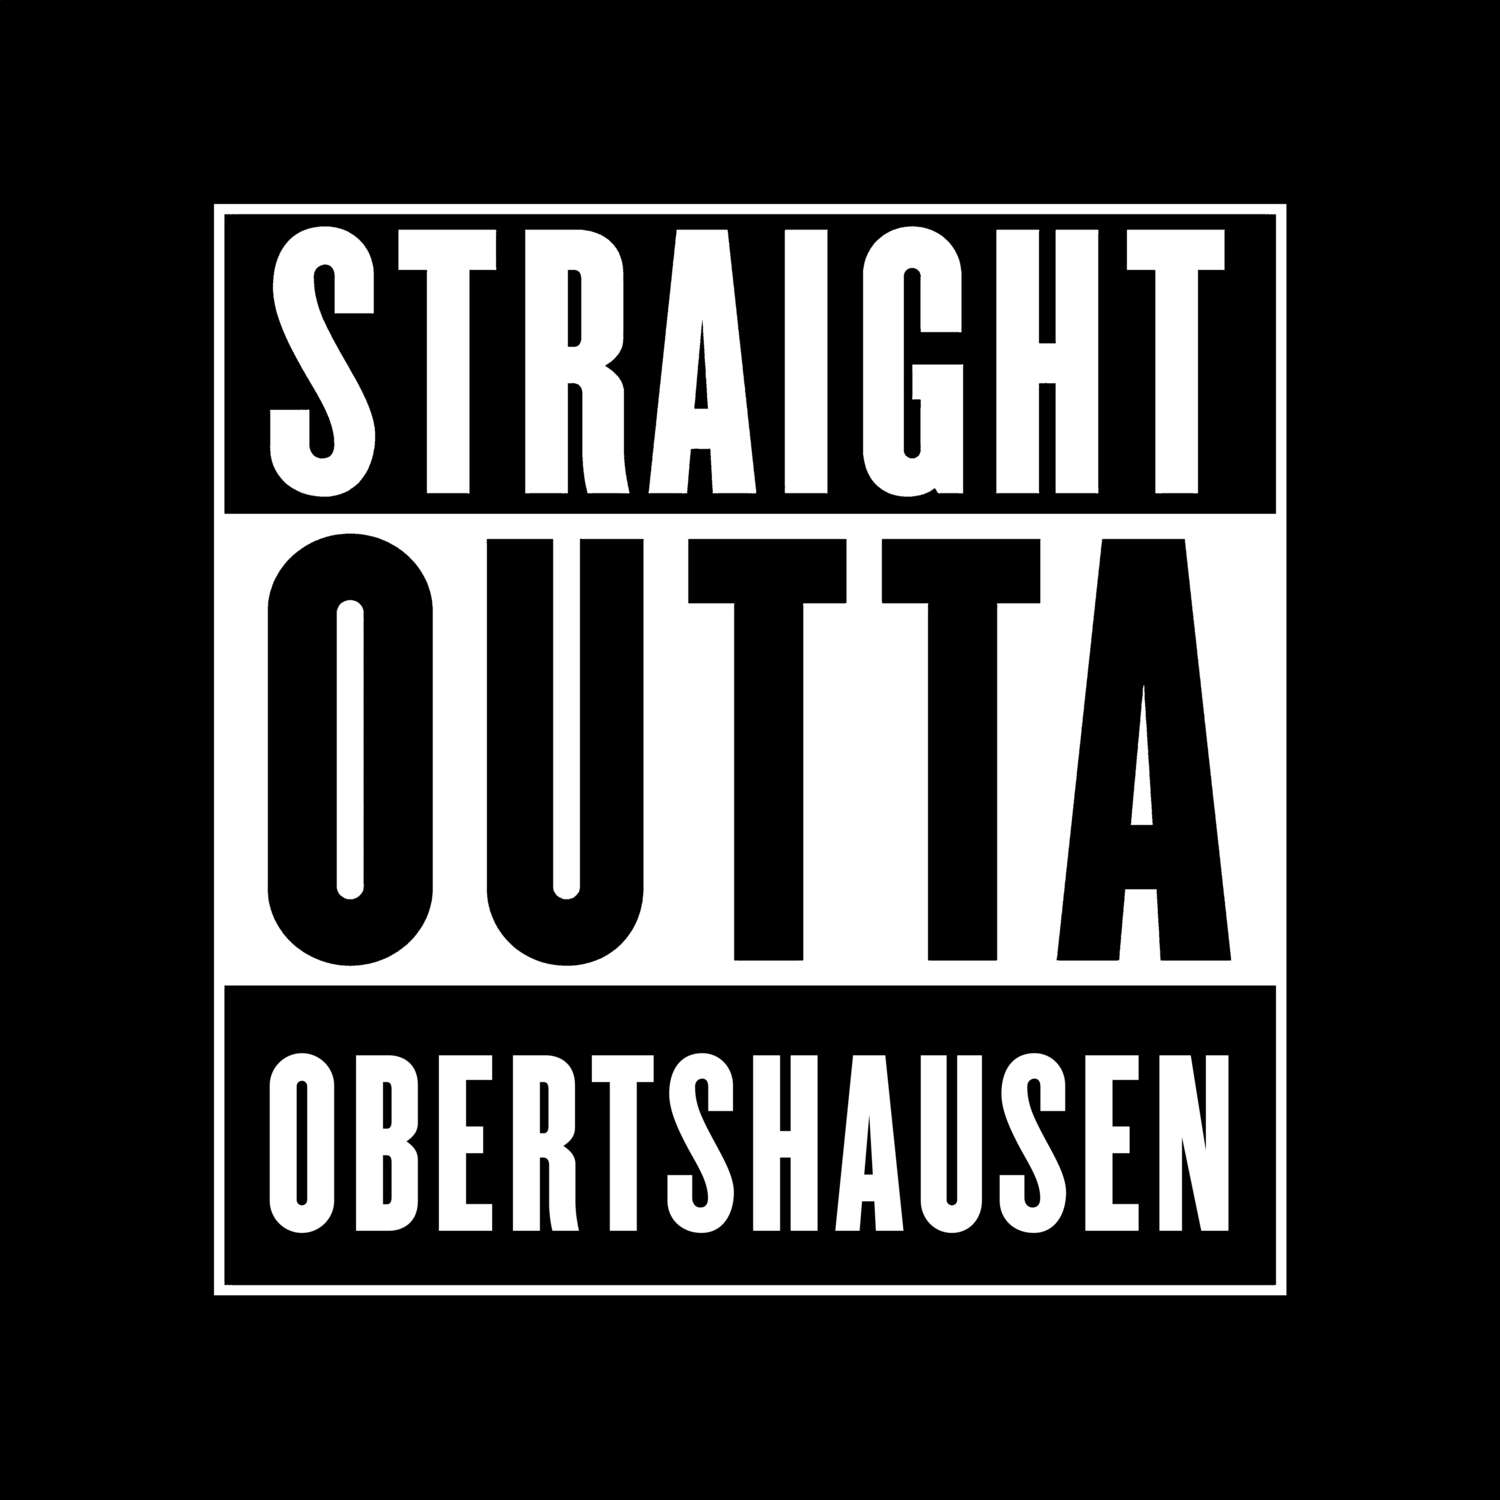 Obertshausen T-Shirt »Straight Outta«